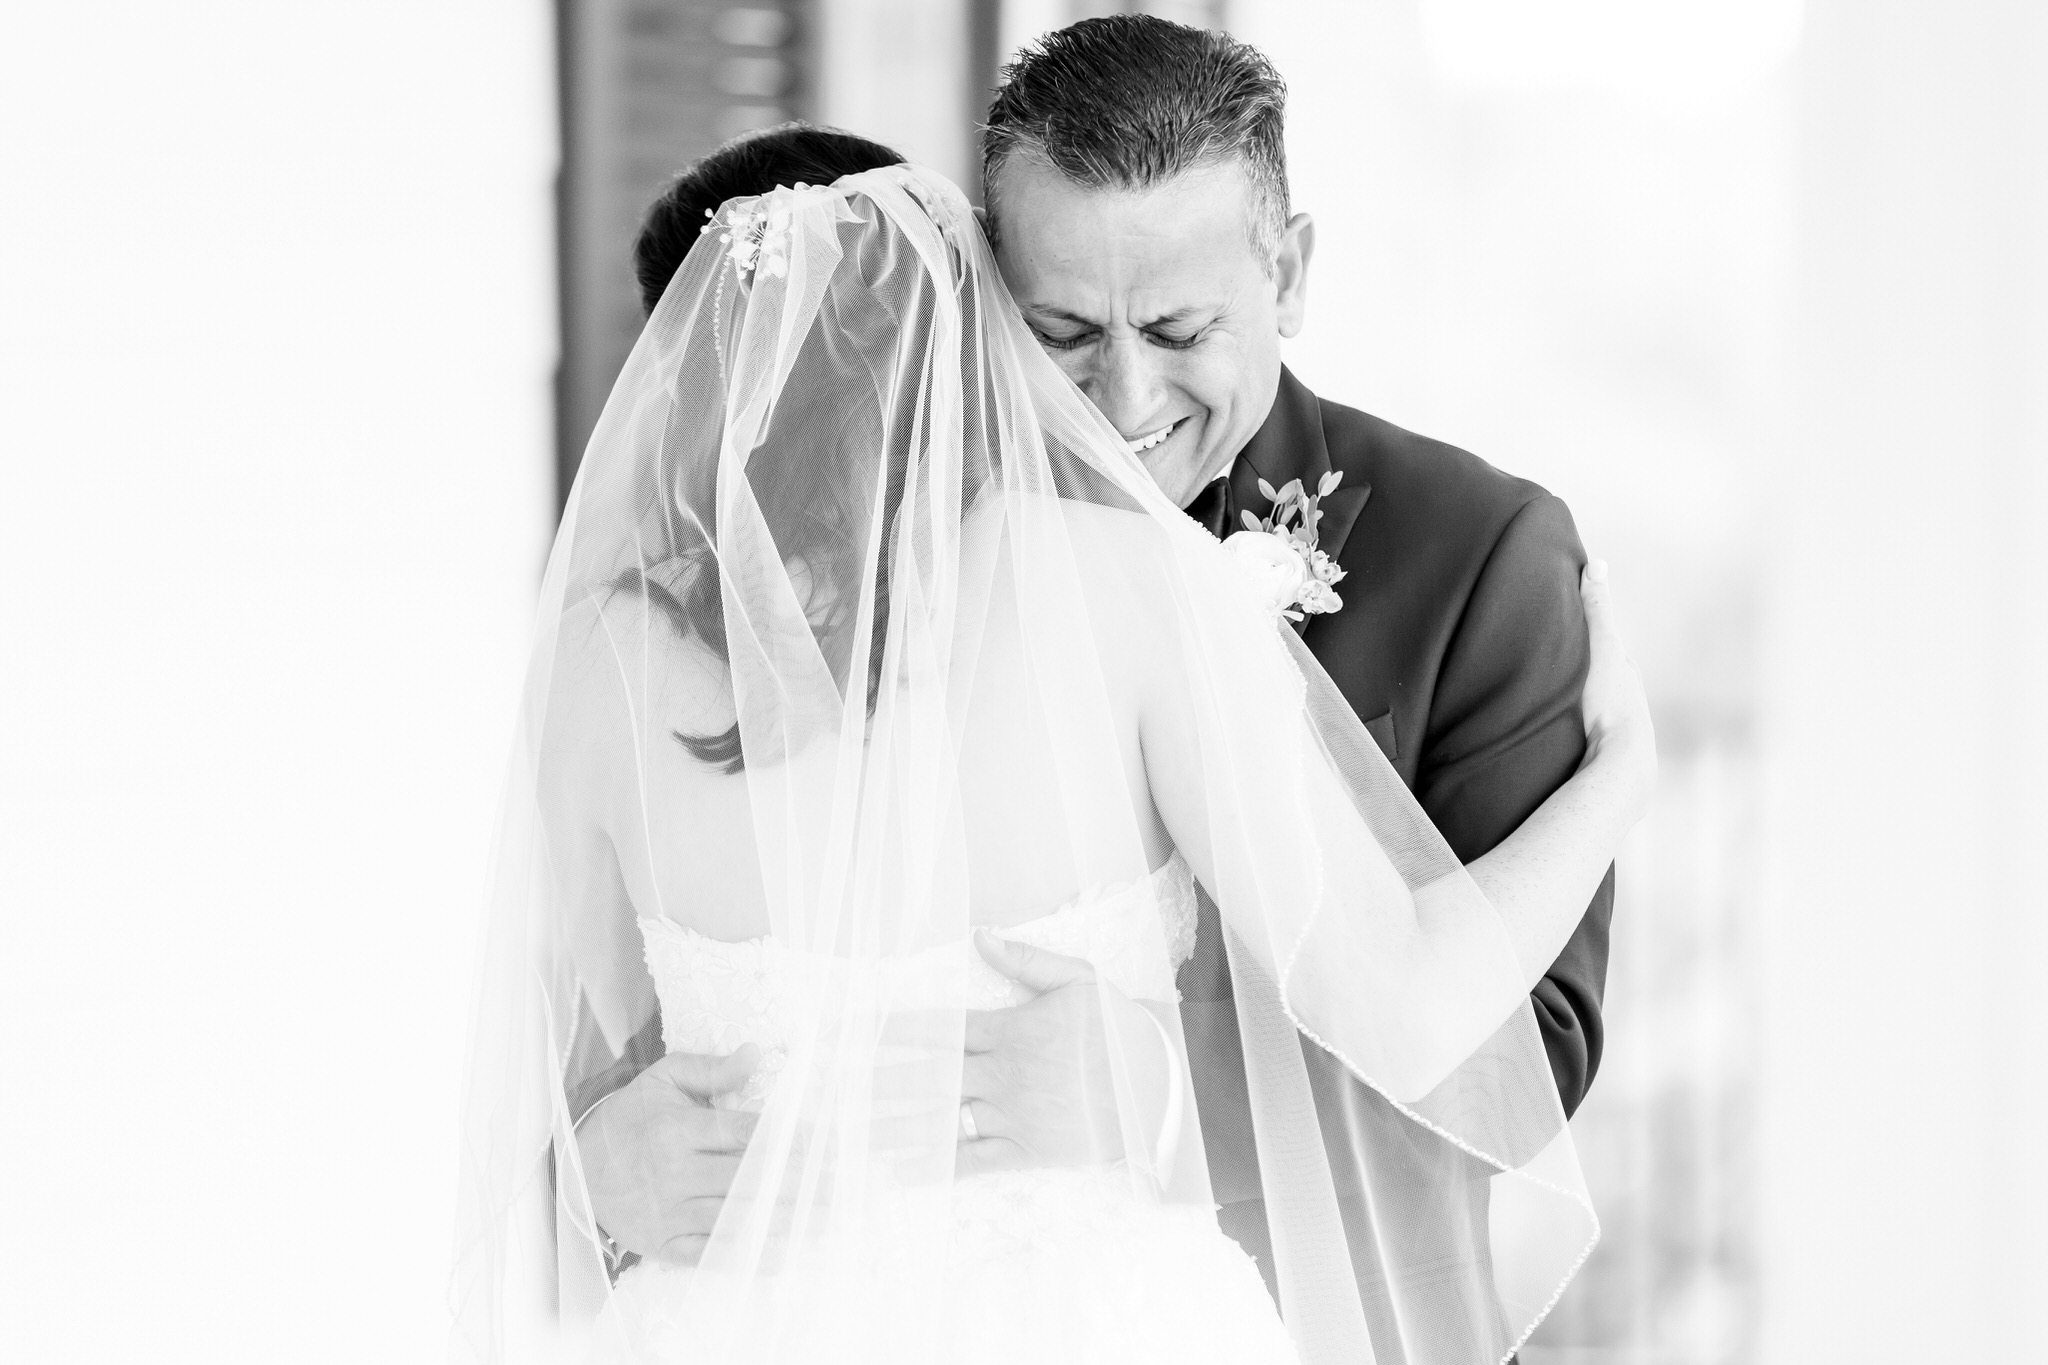 A Dusty Blue and Gold Wedding at Kendall Point in Boerne, TX by Dawn Elizabeth Studios, San Antonio Wedding Photographer